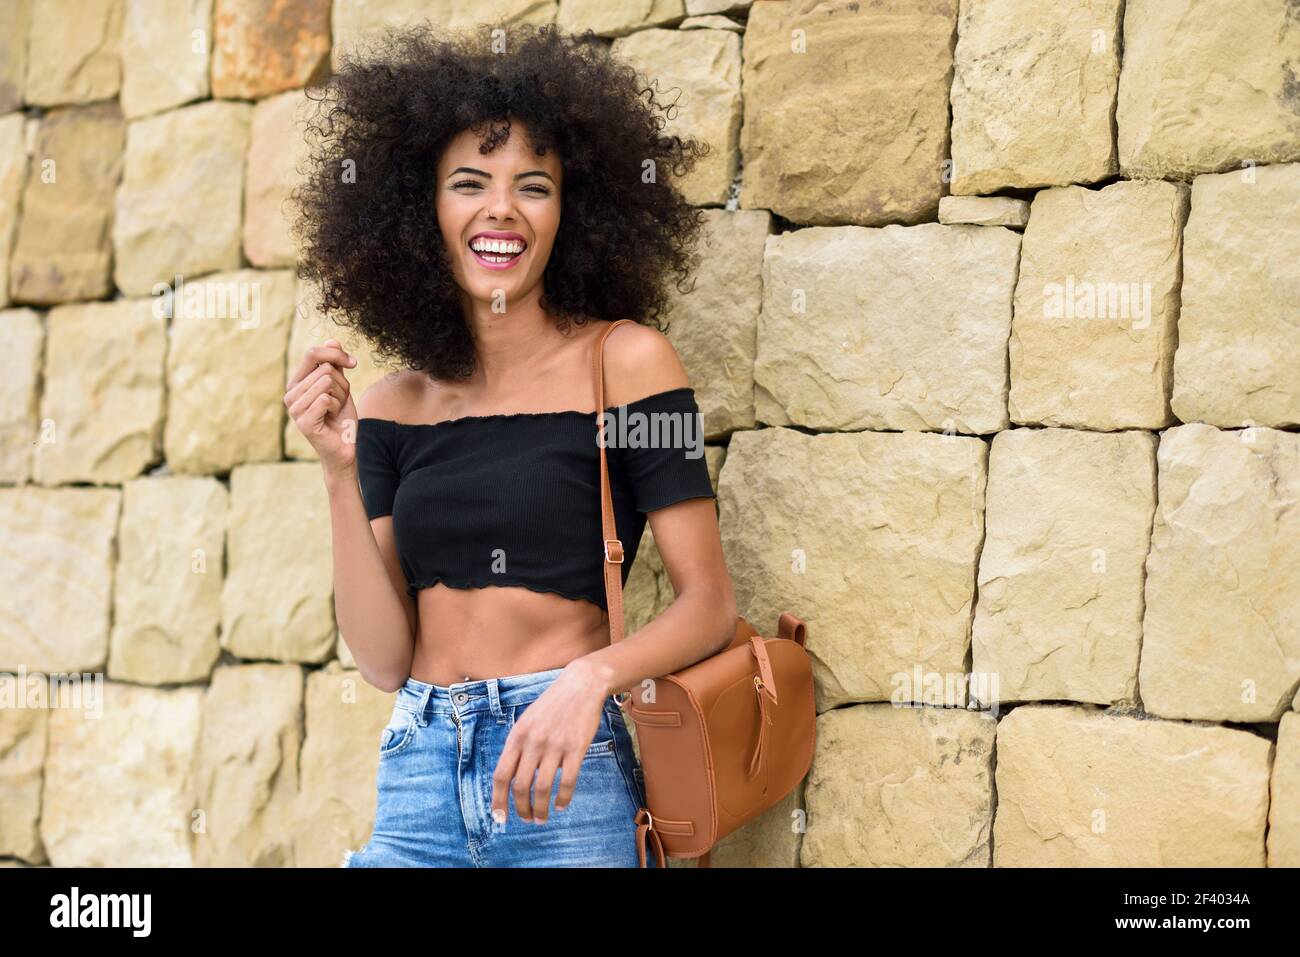 Happy mixed femme avec cheveux afro de rire à l'extérieur. Femme portant des vêtements décontractés en contexte urbain. Concept de vie Banque D'Images